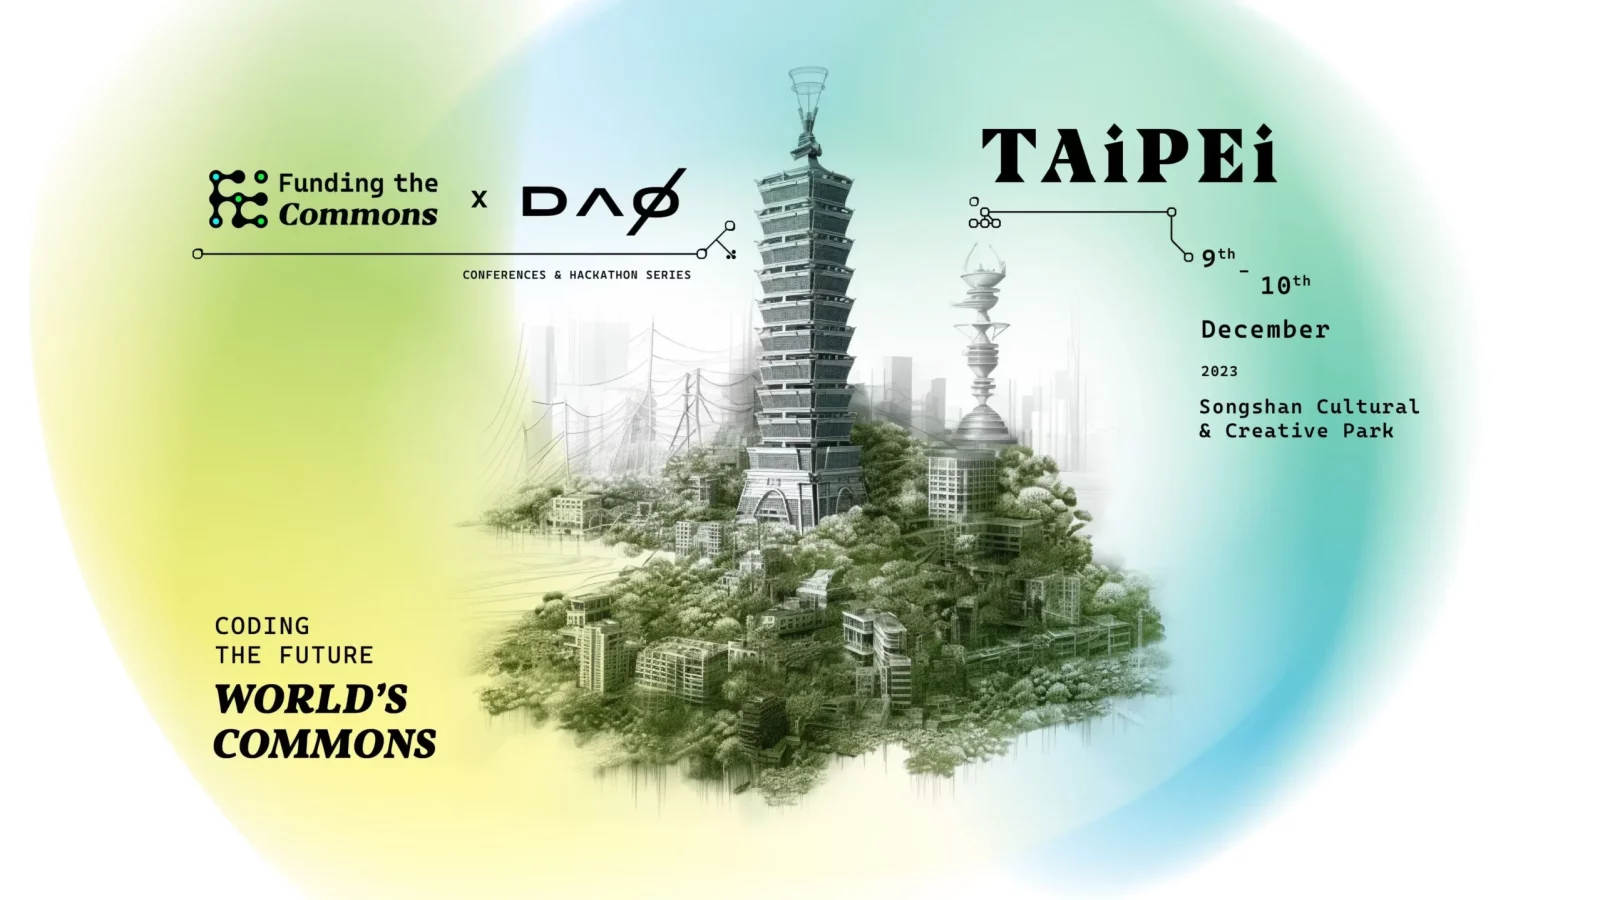 Funding the Commons Taipei 2023